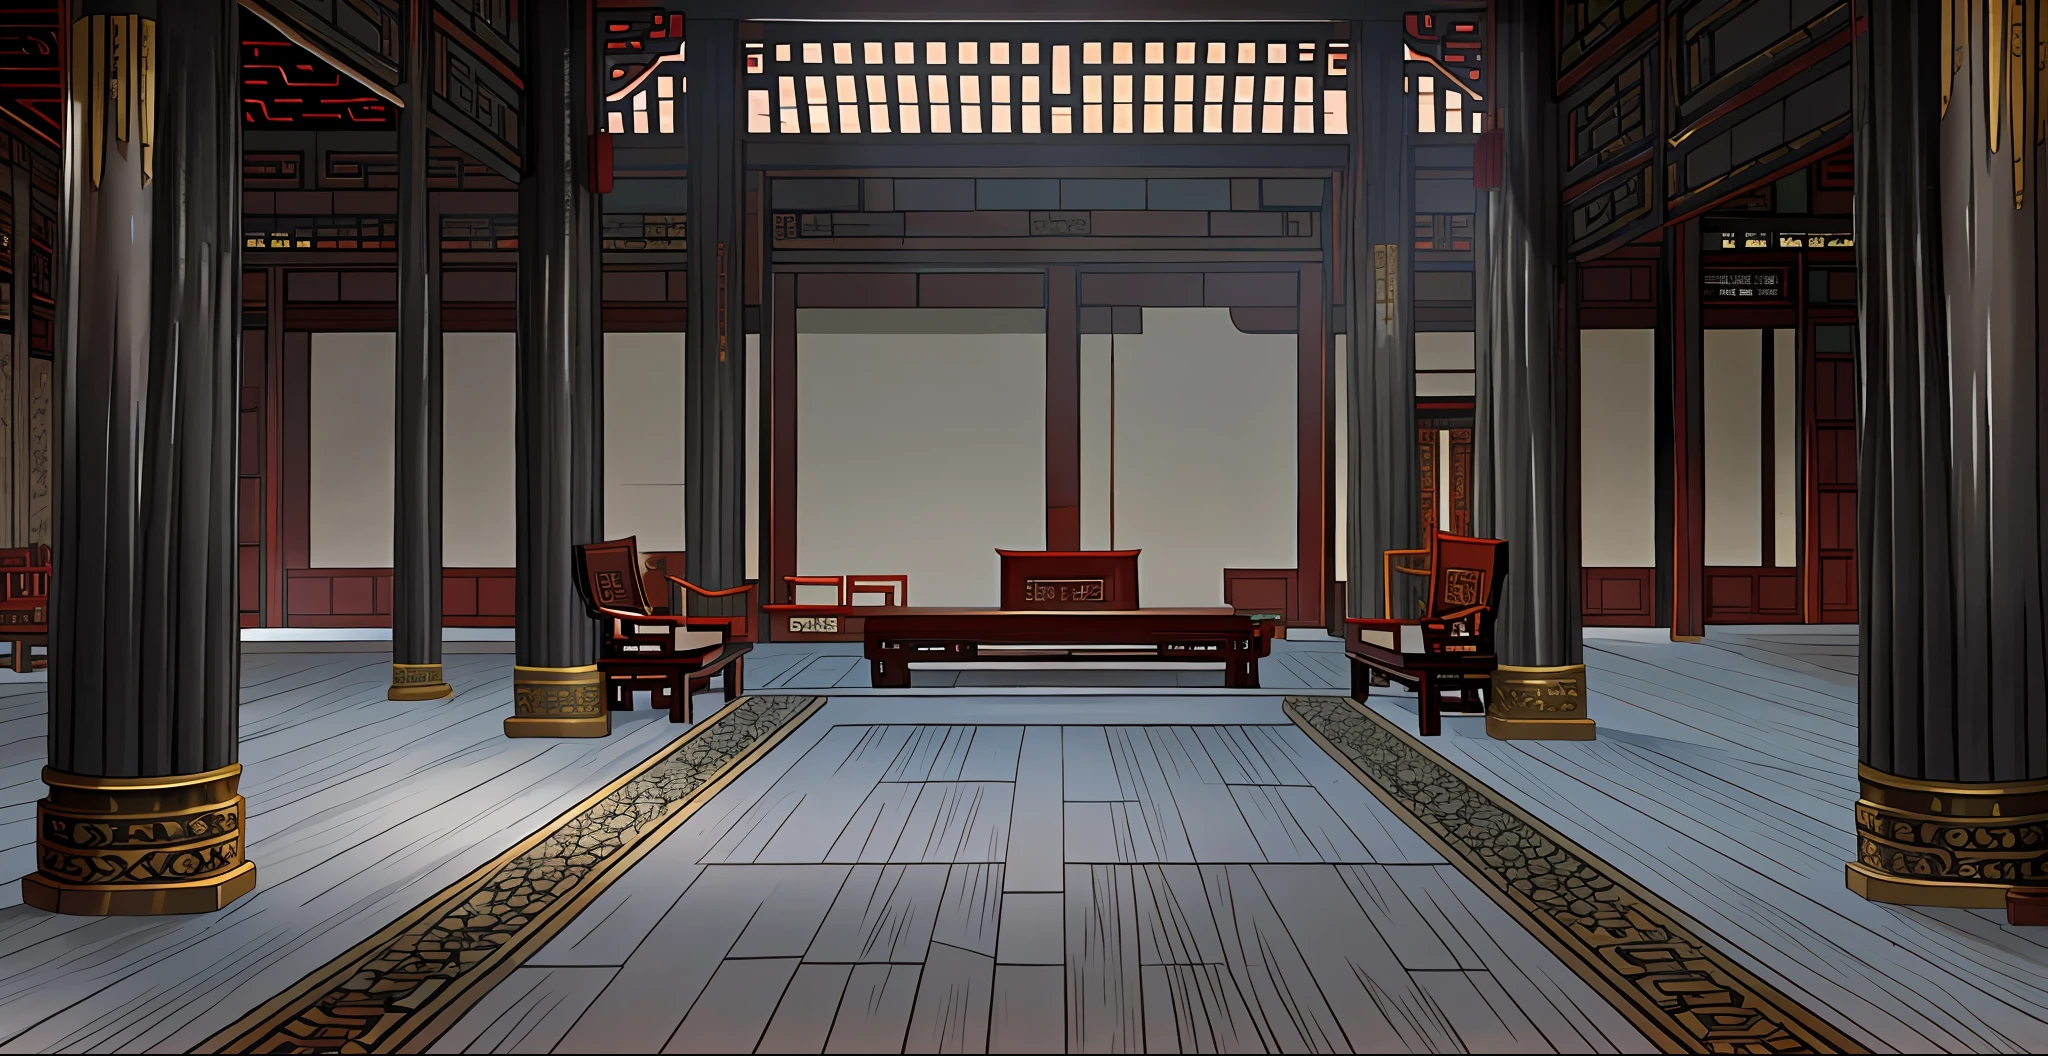 中国古代皇宫大厅内部场景, 椅子